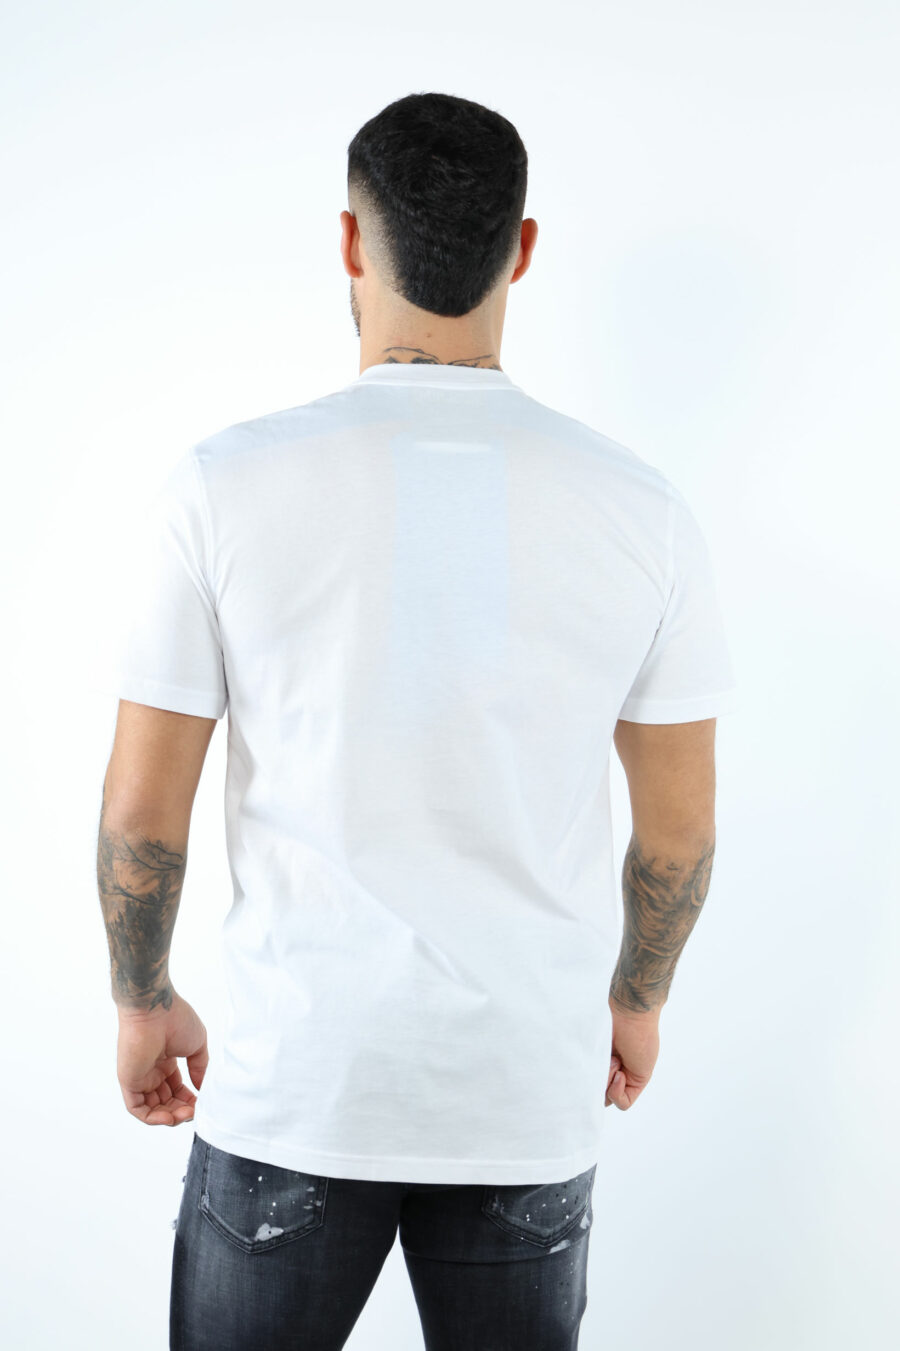 Camiseta blanca con minilogo etiqueta negro - 106760